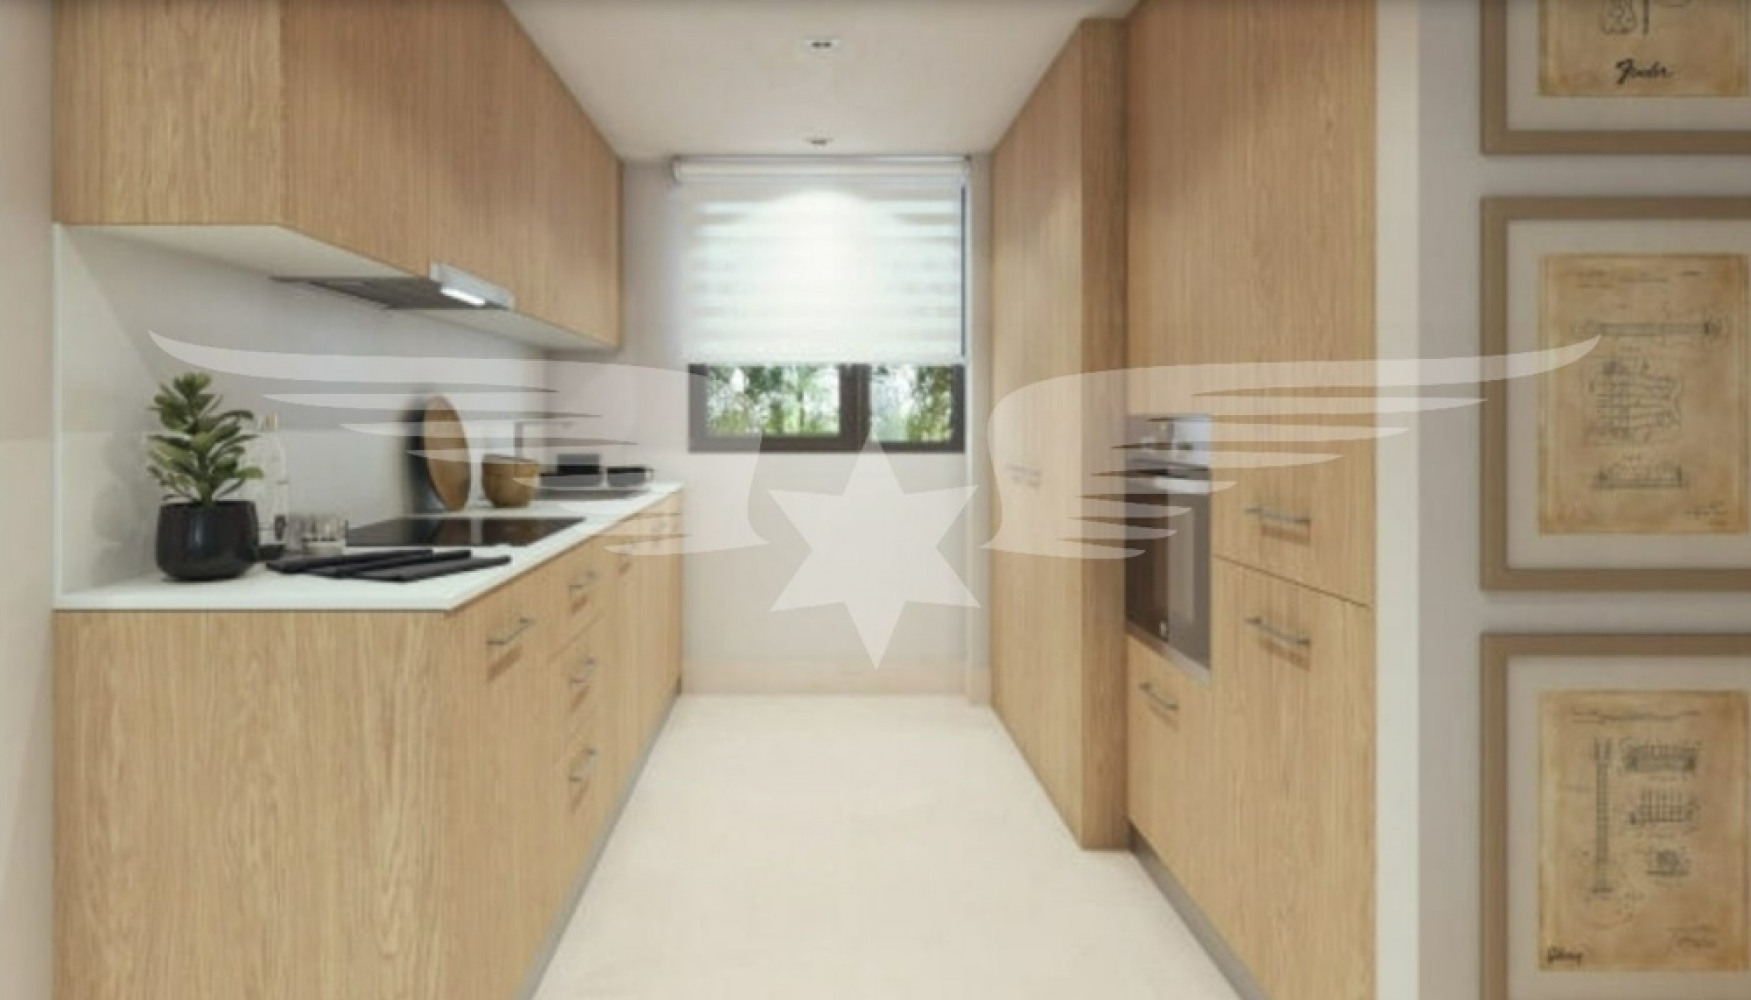 Visualisierte Küche